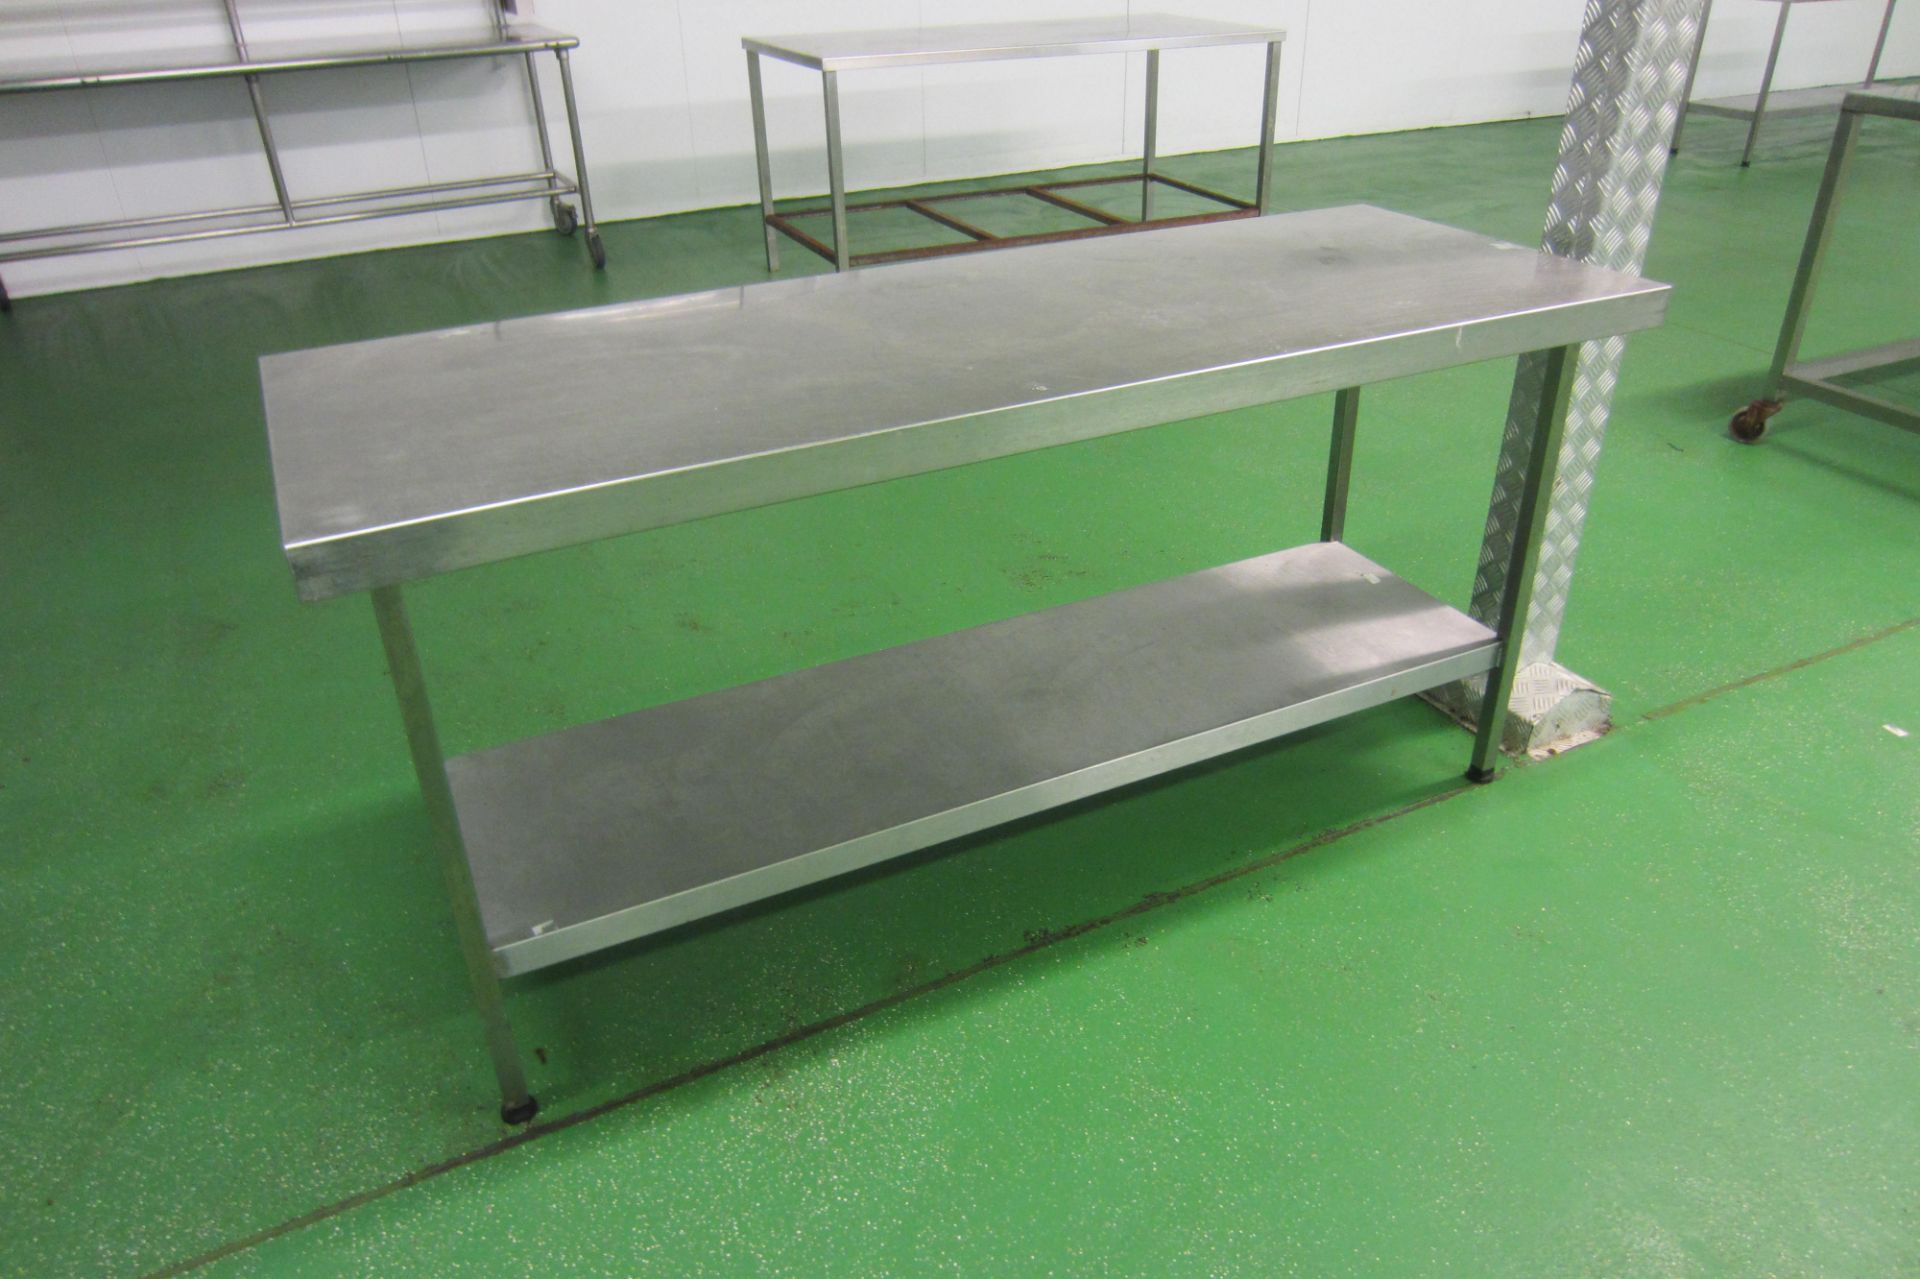 5 x Stainless Steel Prep/Work Tables with Shelf Under. Size 3 x 180cm x 65cm, 2 x 150cm x 60cm - Bild 3 aus 5